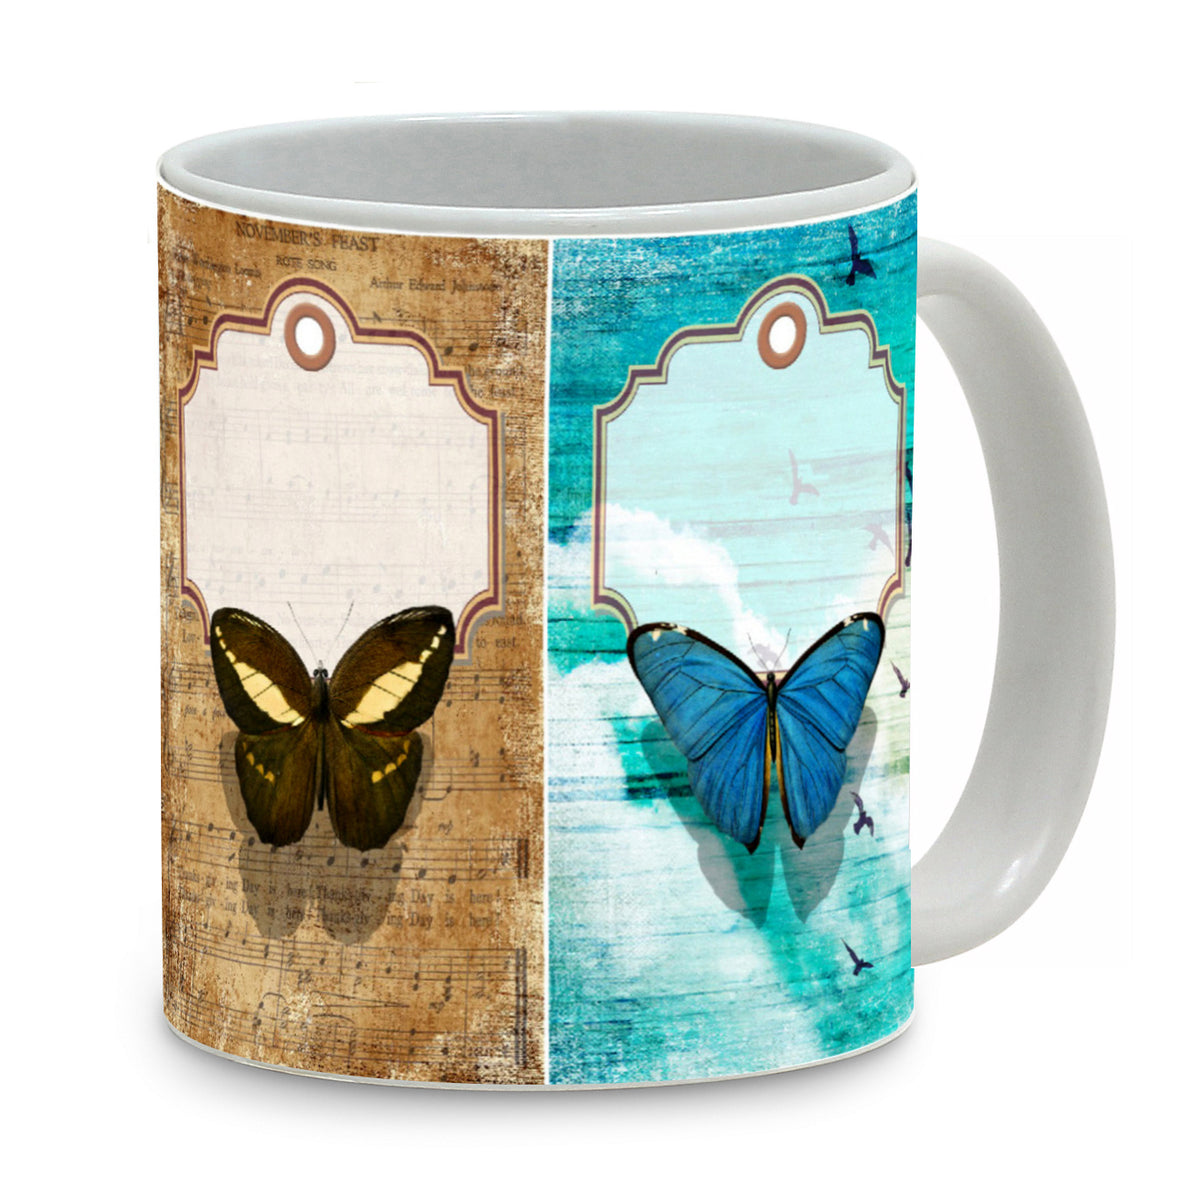 SUBLIMART: Pets Art - Mug featuring a beautiful butterflies design - Artistica.com